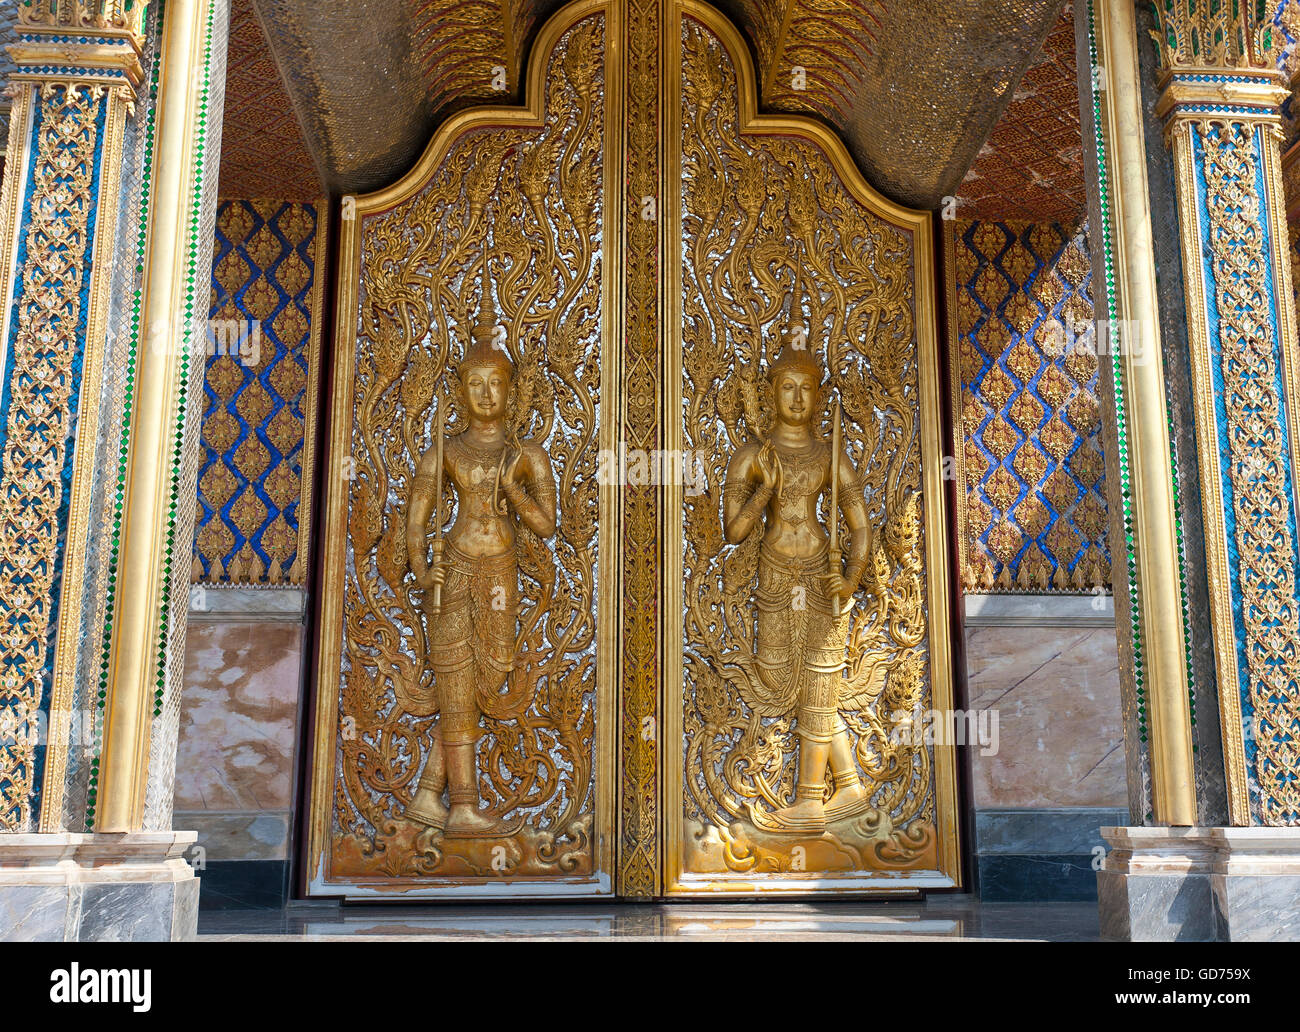 Porte dorée avec des Bouddhas, Wat temple Thasung Banphot, province de Nakhon Sawan, Thaïlande Banque D'Images